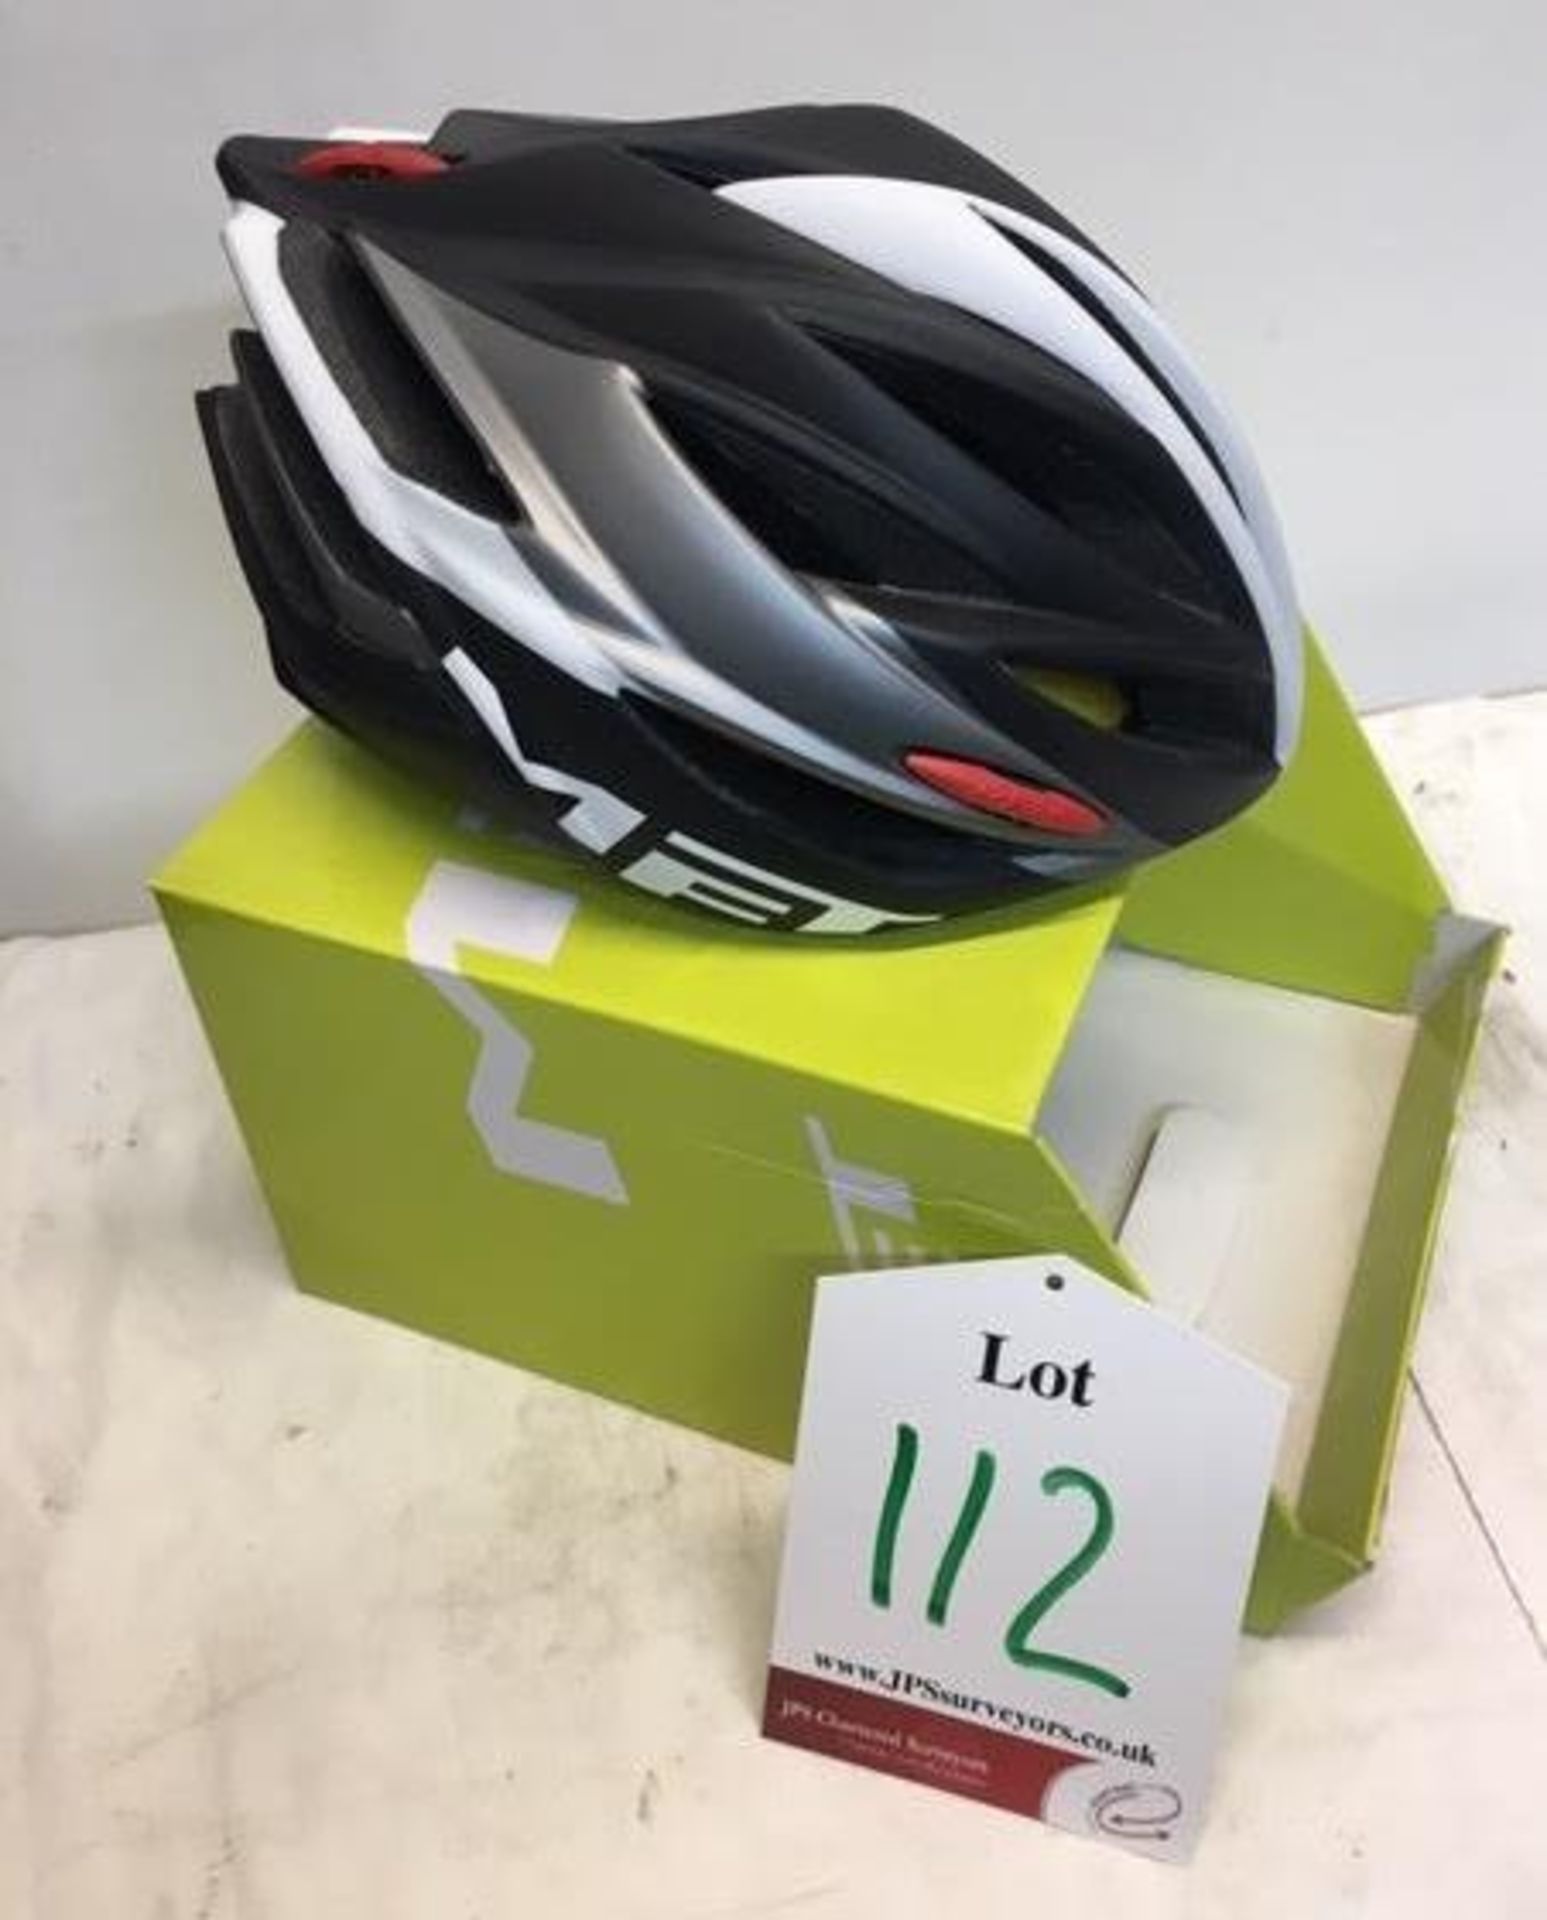 Met Forte Black Anthracite Cycling Helmet | 52-59cm | 2015 | RRP £43.69